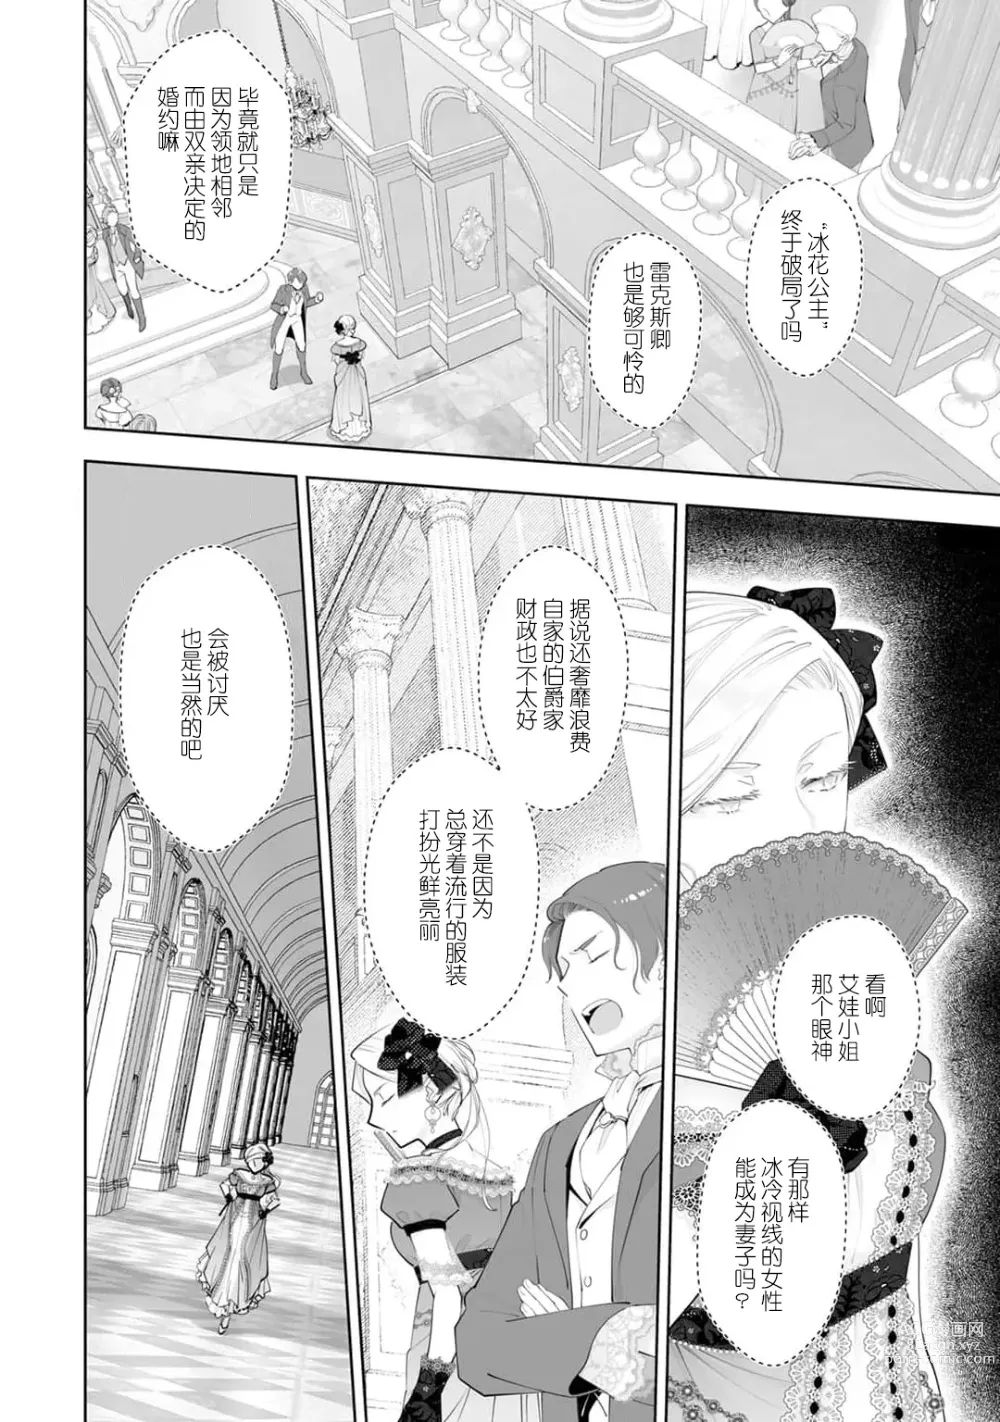 Page 4 of manga 被解除婚约的恶役千金，被帅哥资产家求婚了。 1-4